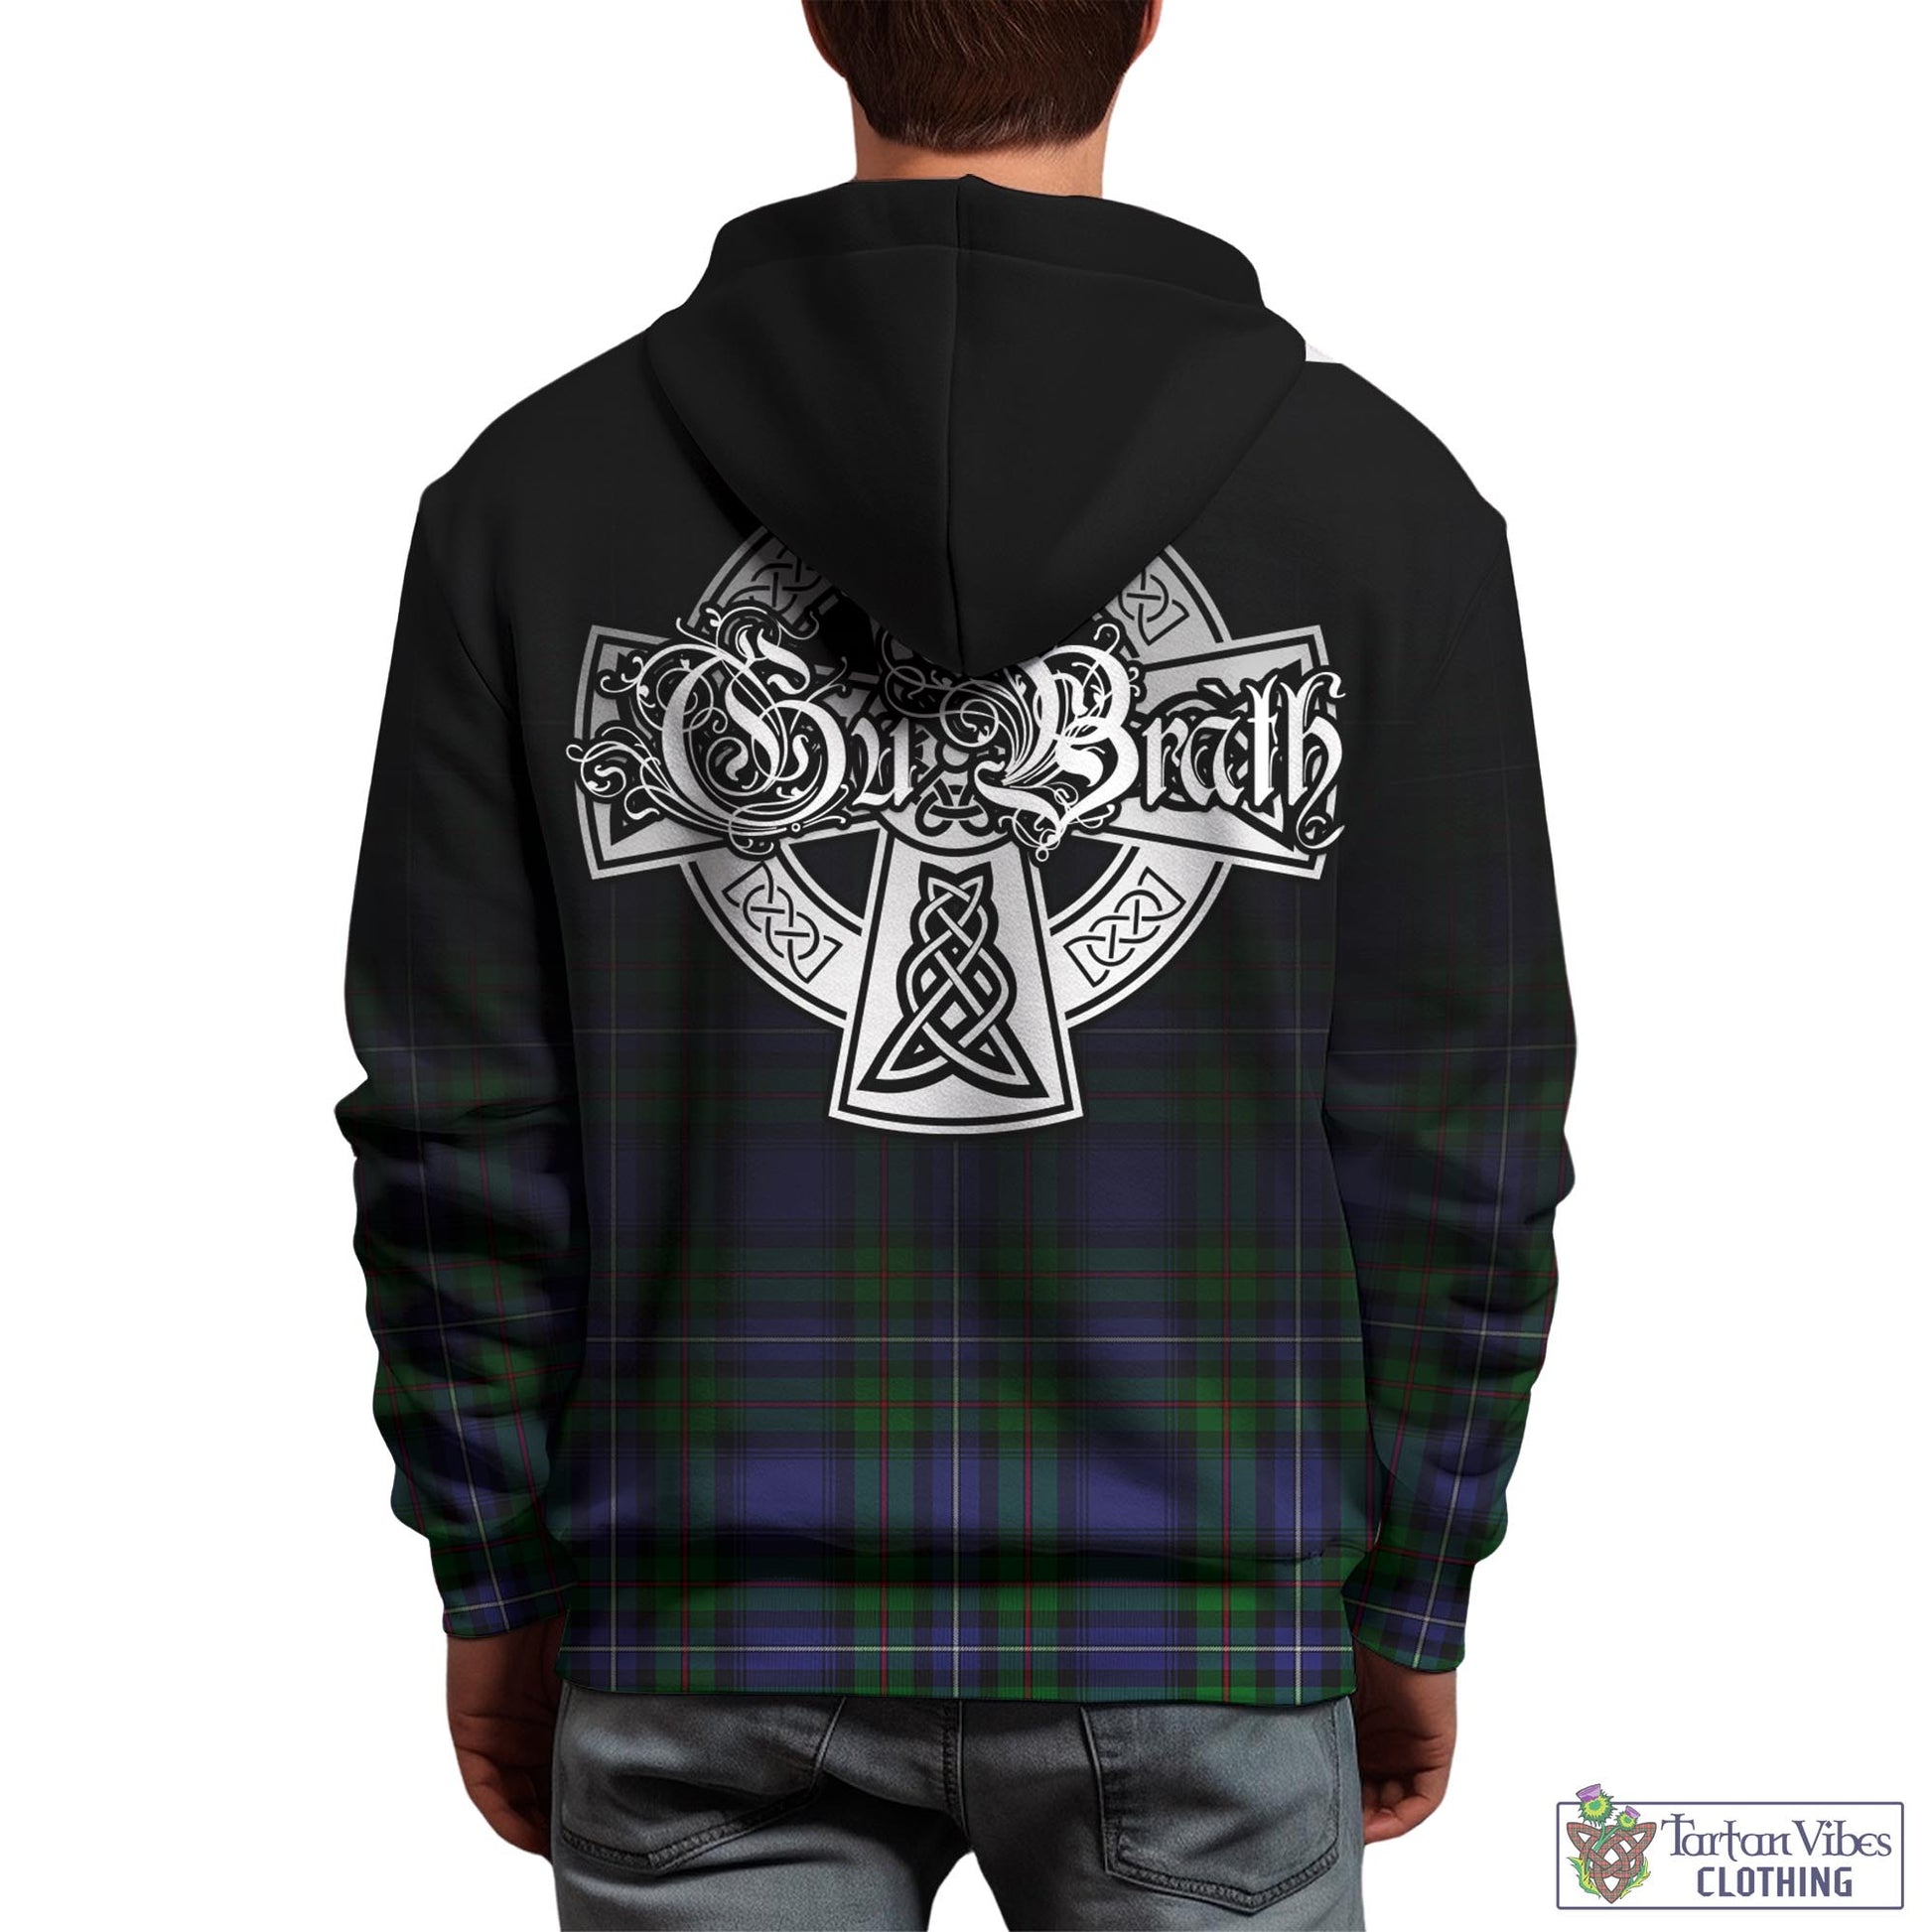 Tartan Vibes Clothing Donnachaidh Tartan Hoodie Featuring Alba Gu Brath Family Crest Celtic Inspired